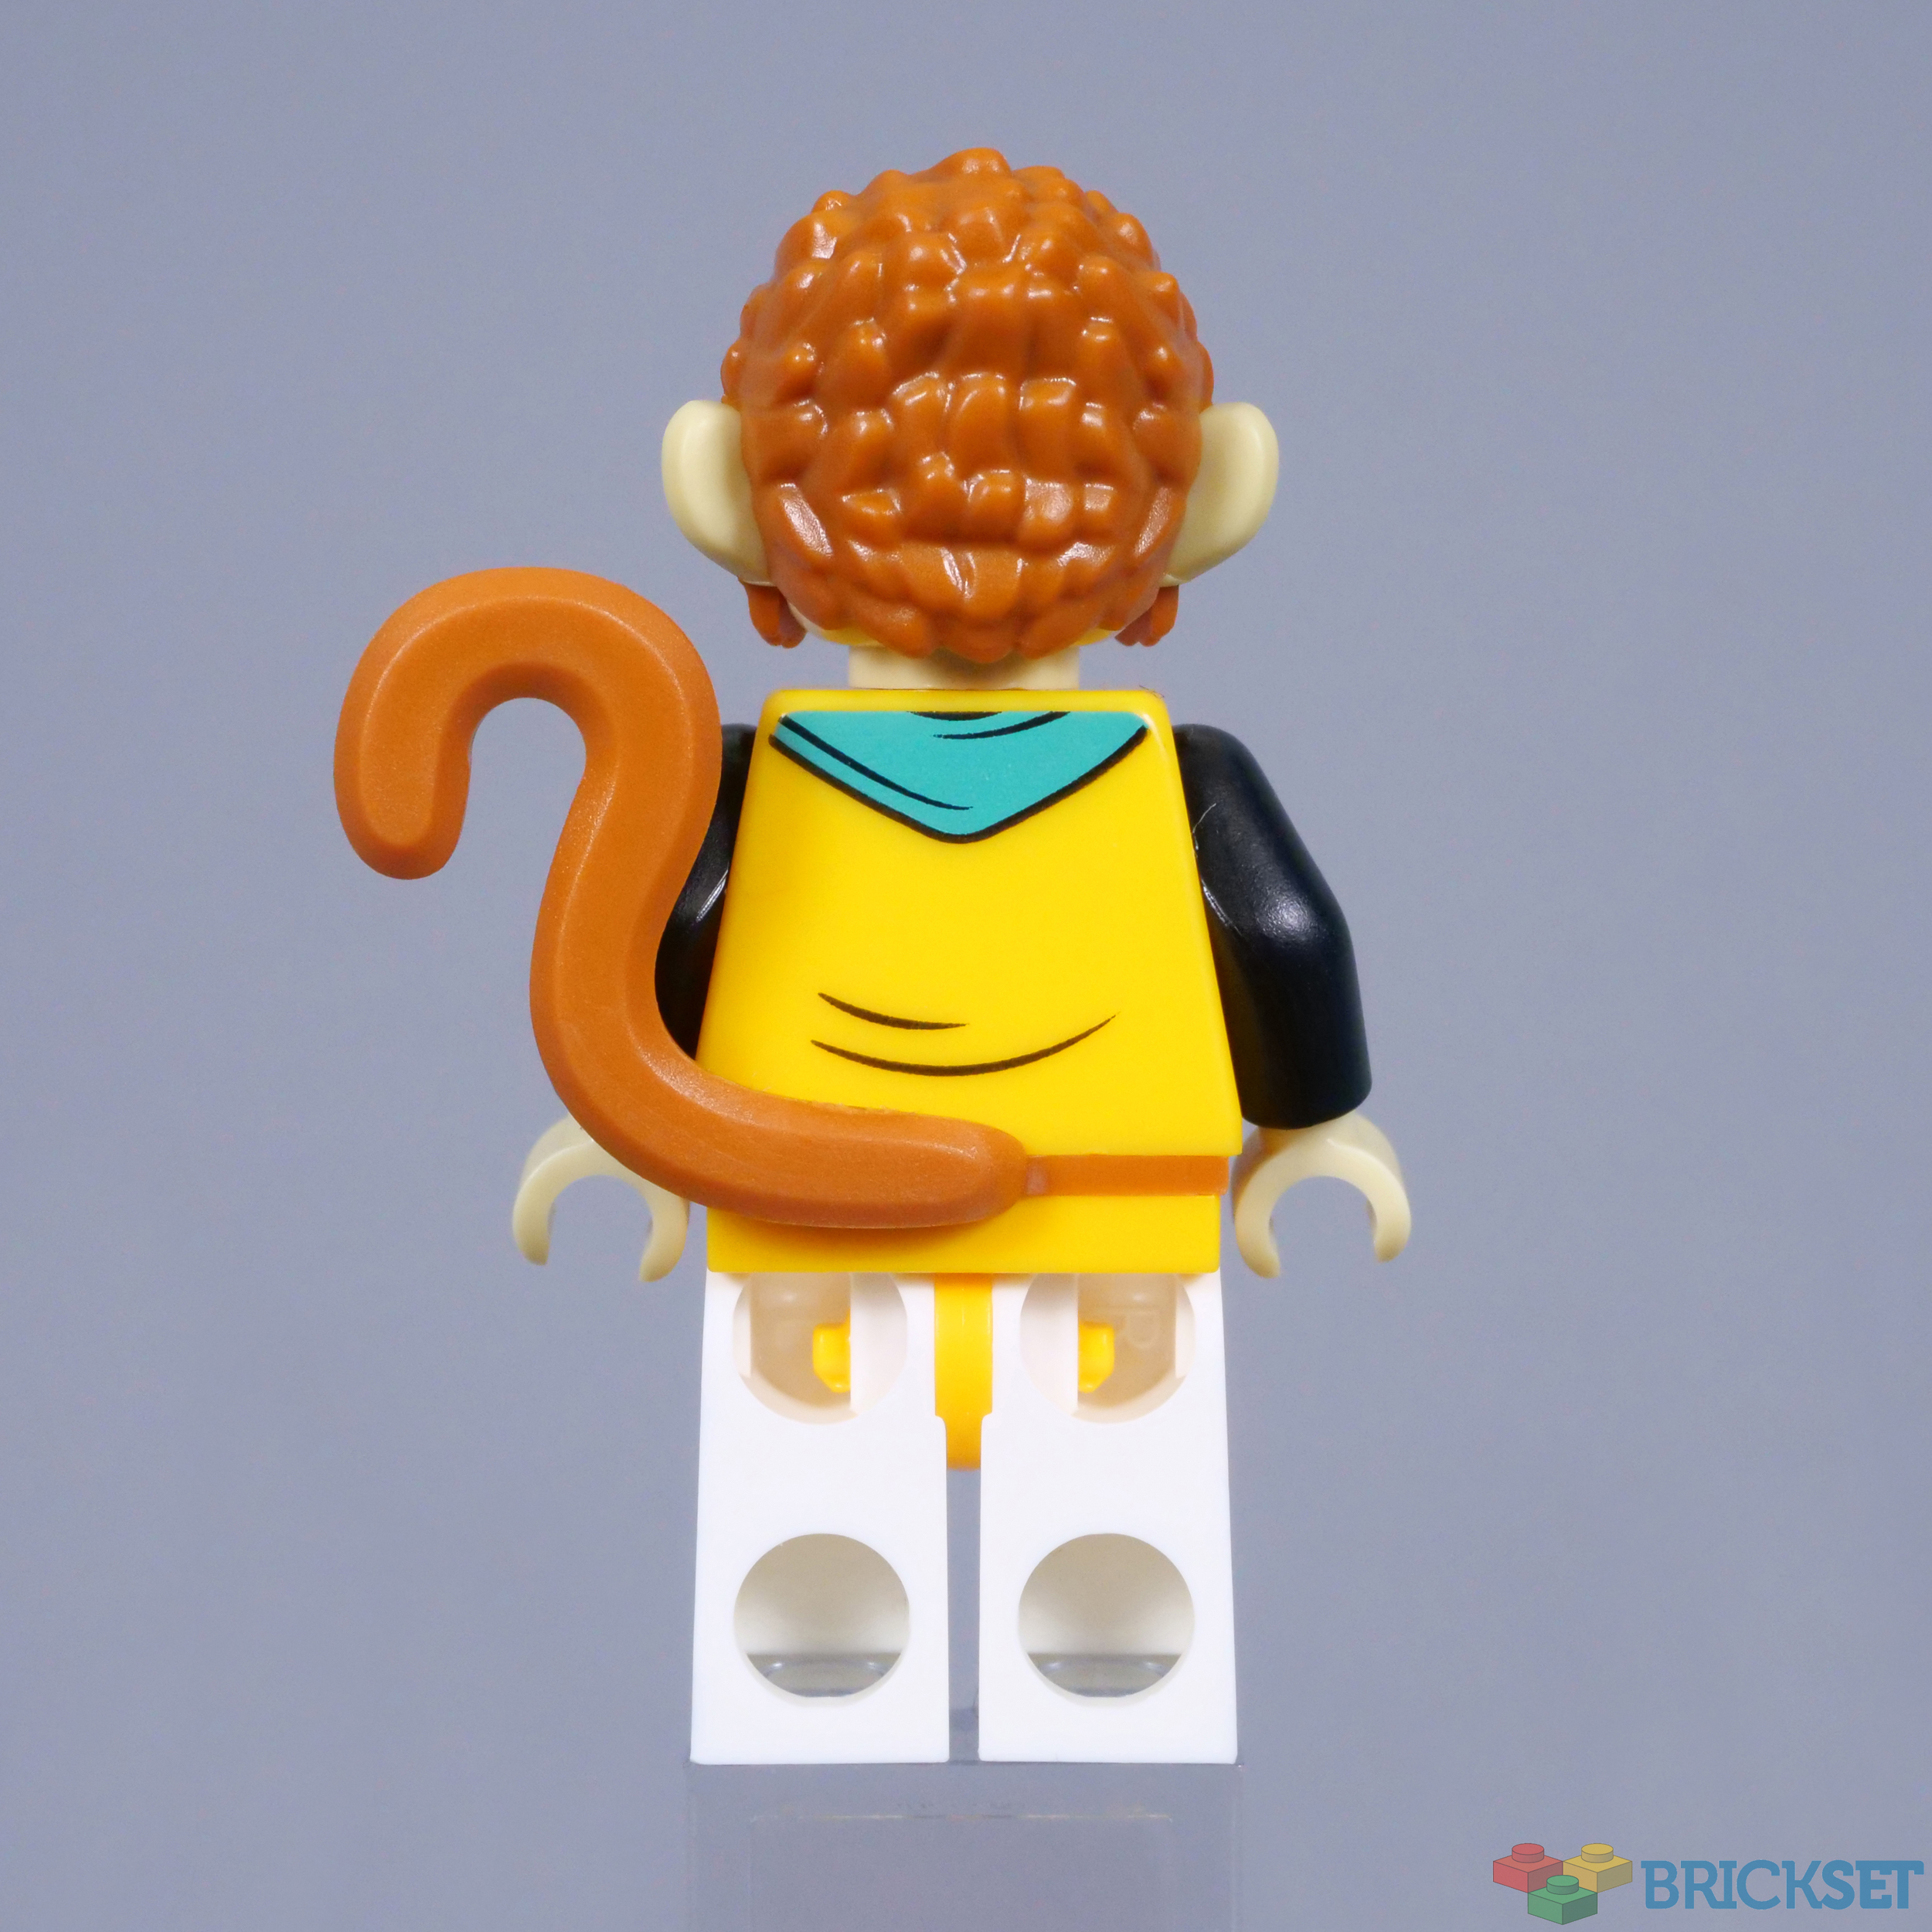 Zoran's Lego Photography — Monkey King Marketplace 🐒